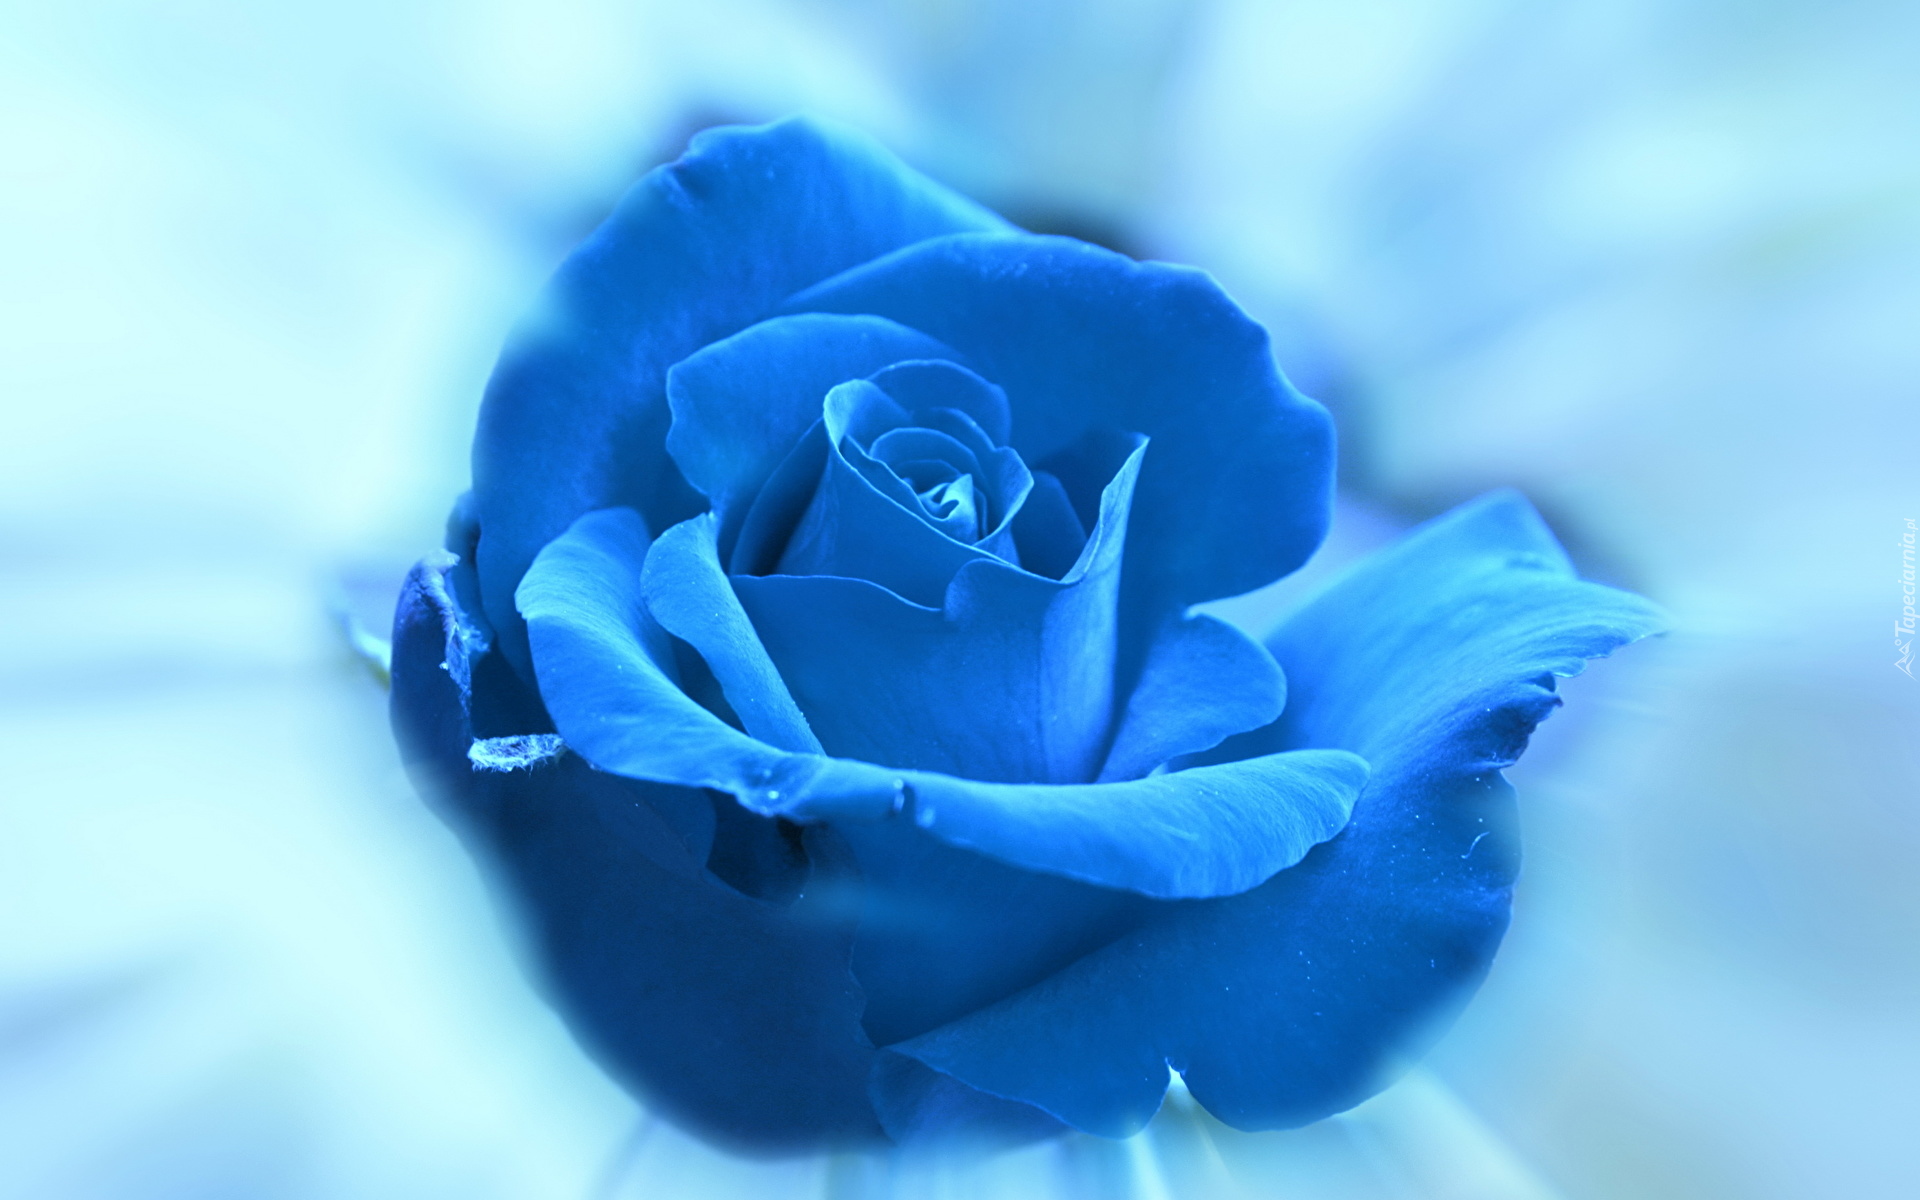 Kwiat, Róża, Niebieska, Płatki, Tło niebieskie